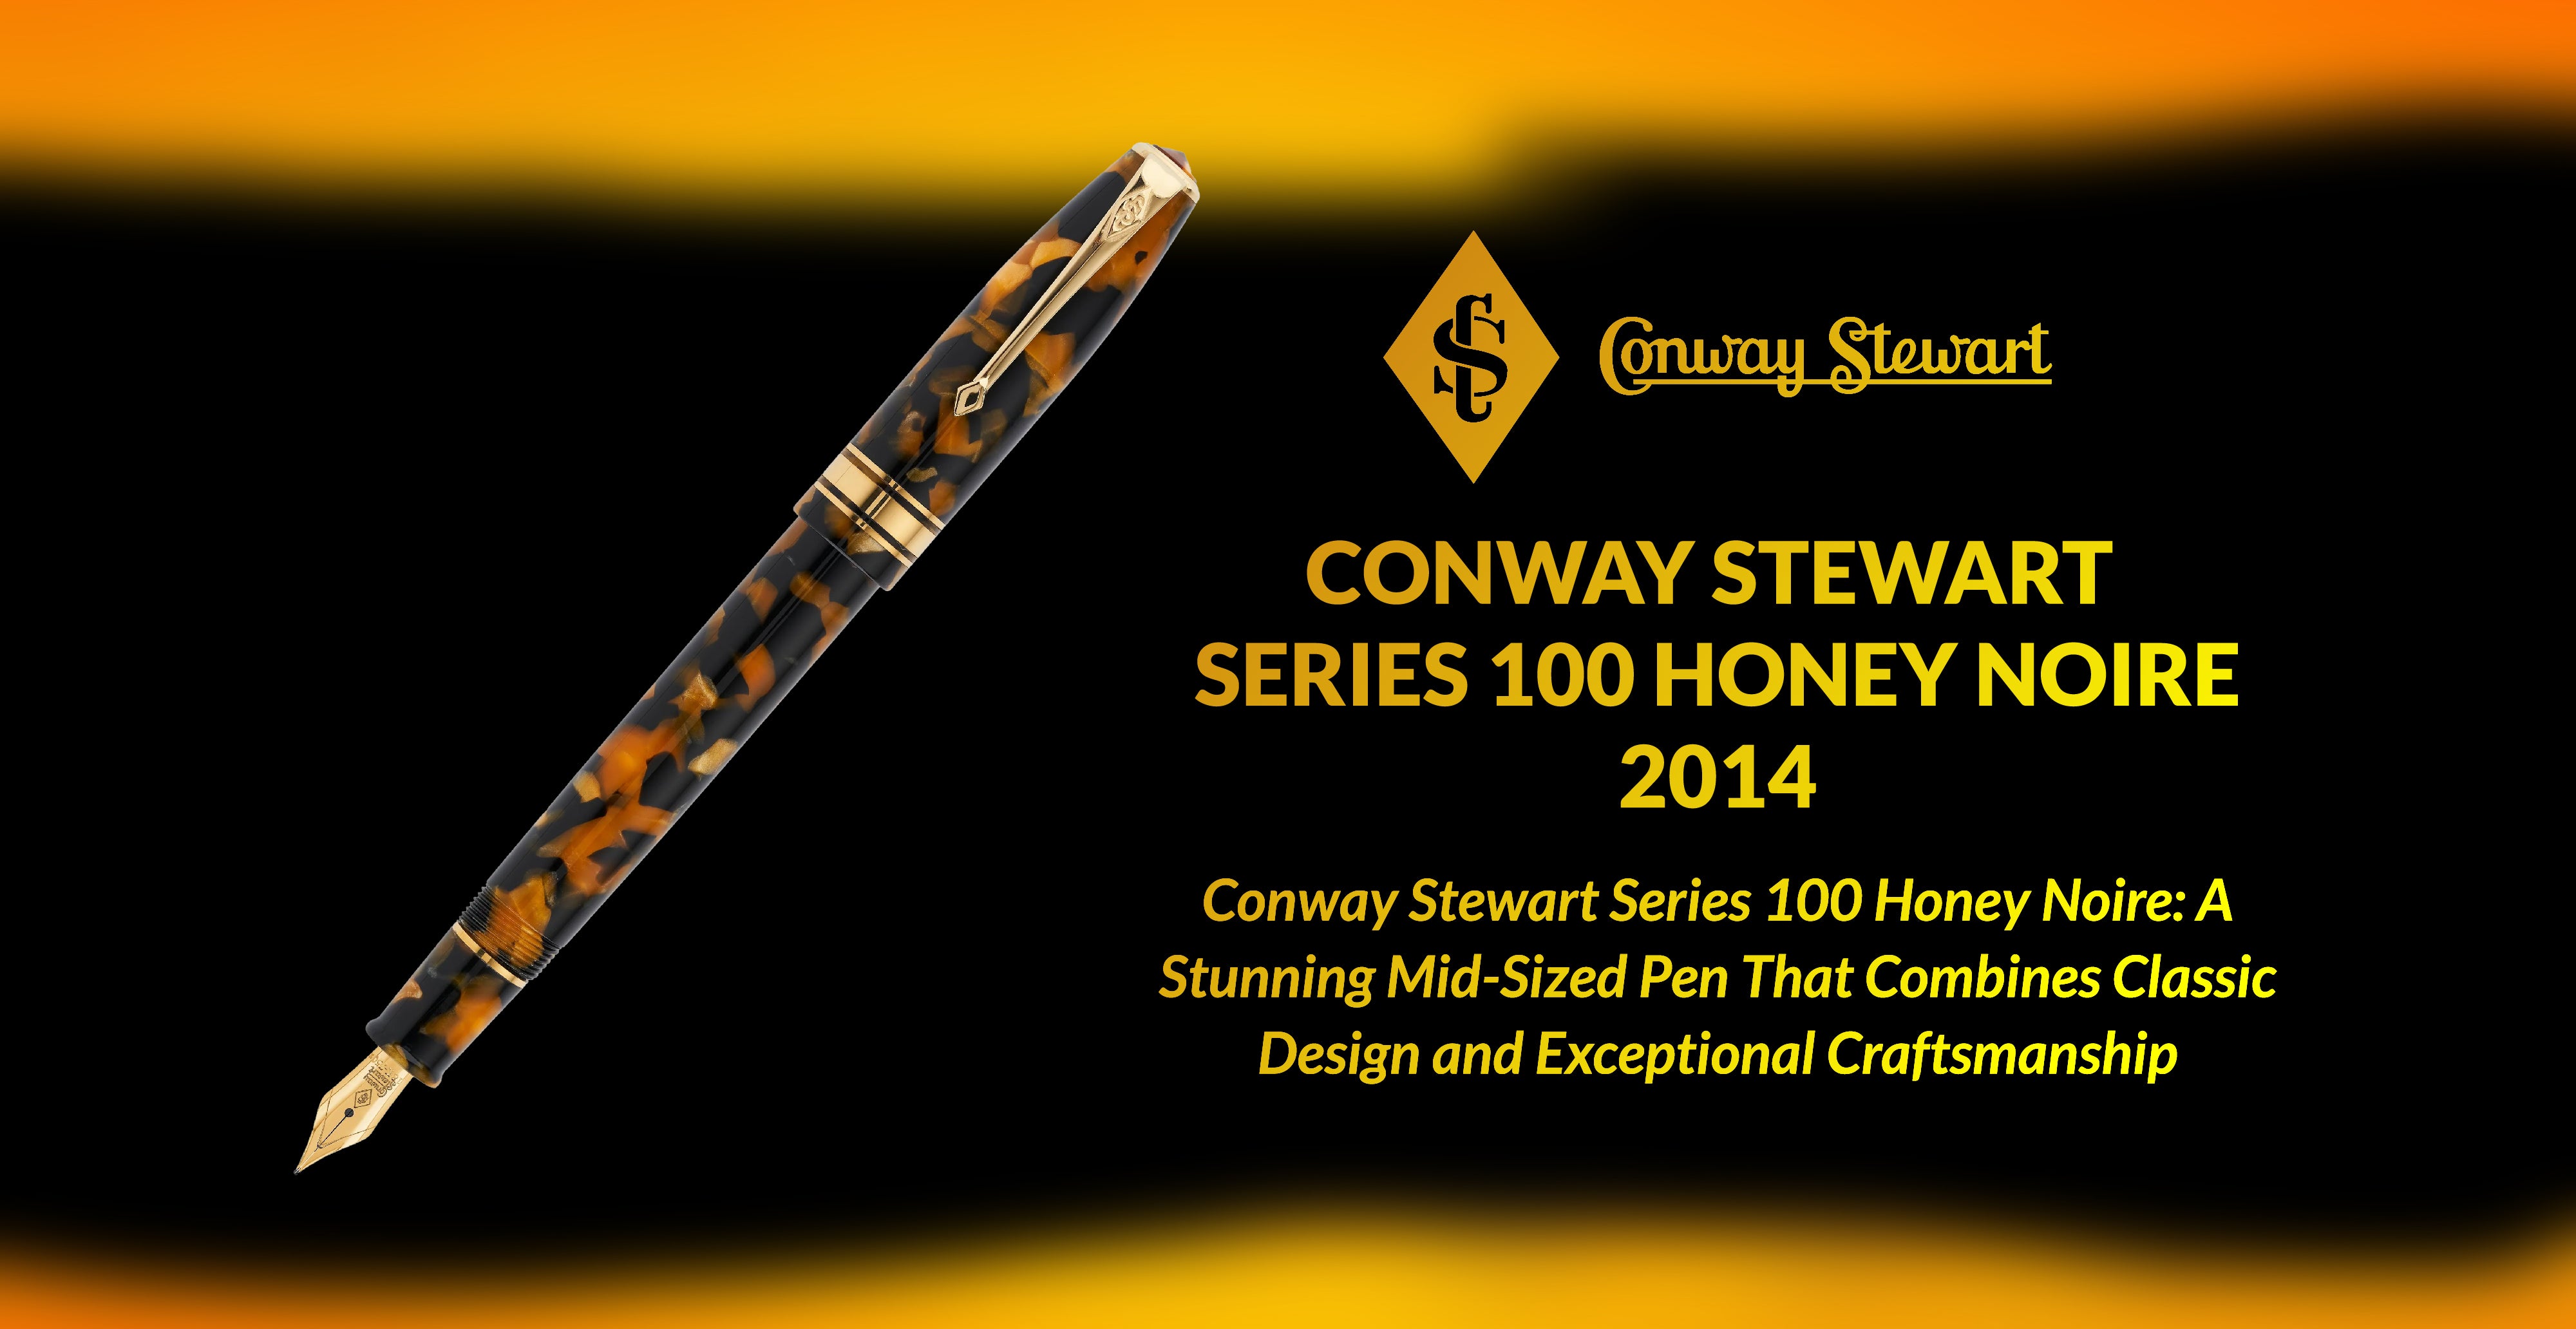 Conway Stewart Series 100 Honey Noire, 2014